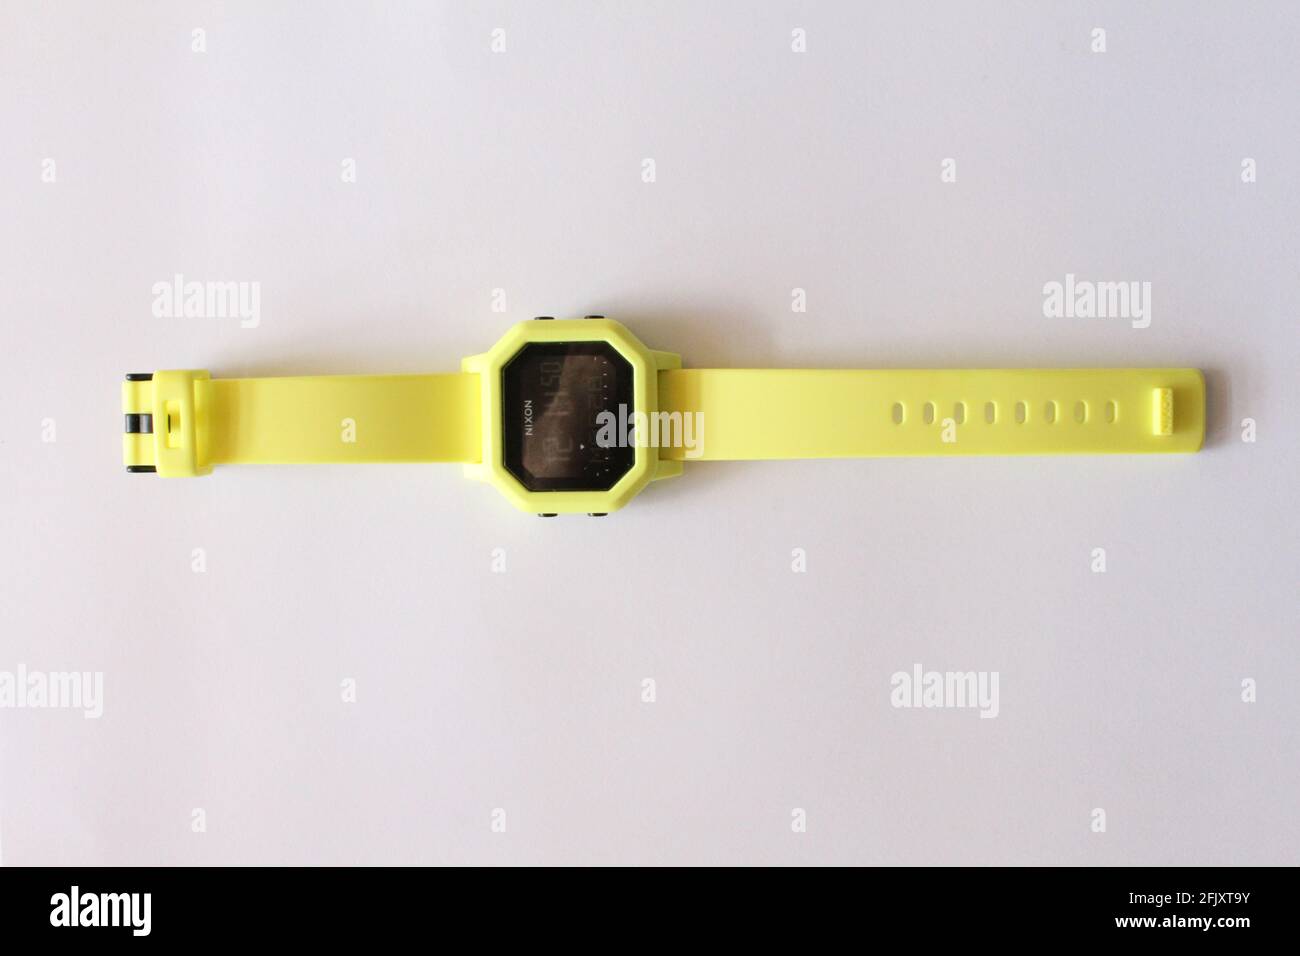 Reloj Nixon Neon Wrist Watch, digital, sobre una superficie blanca y plana Foto de stock